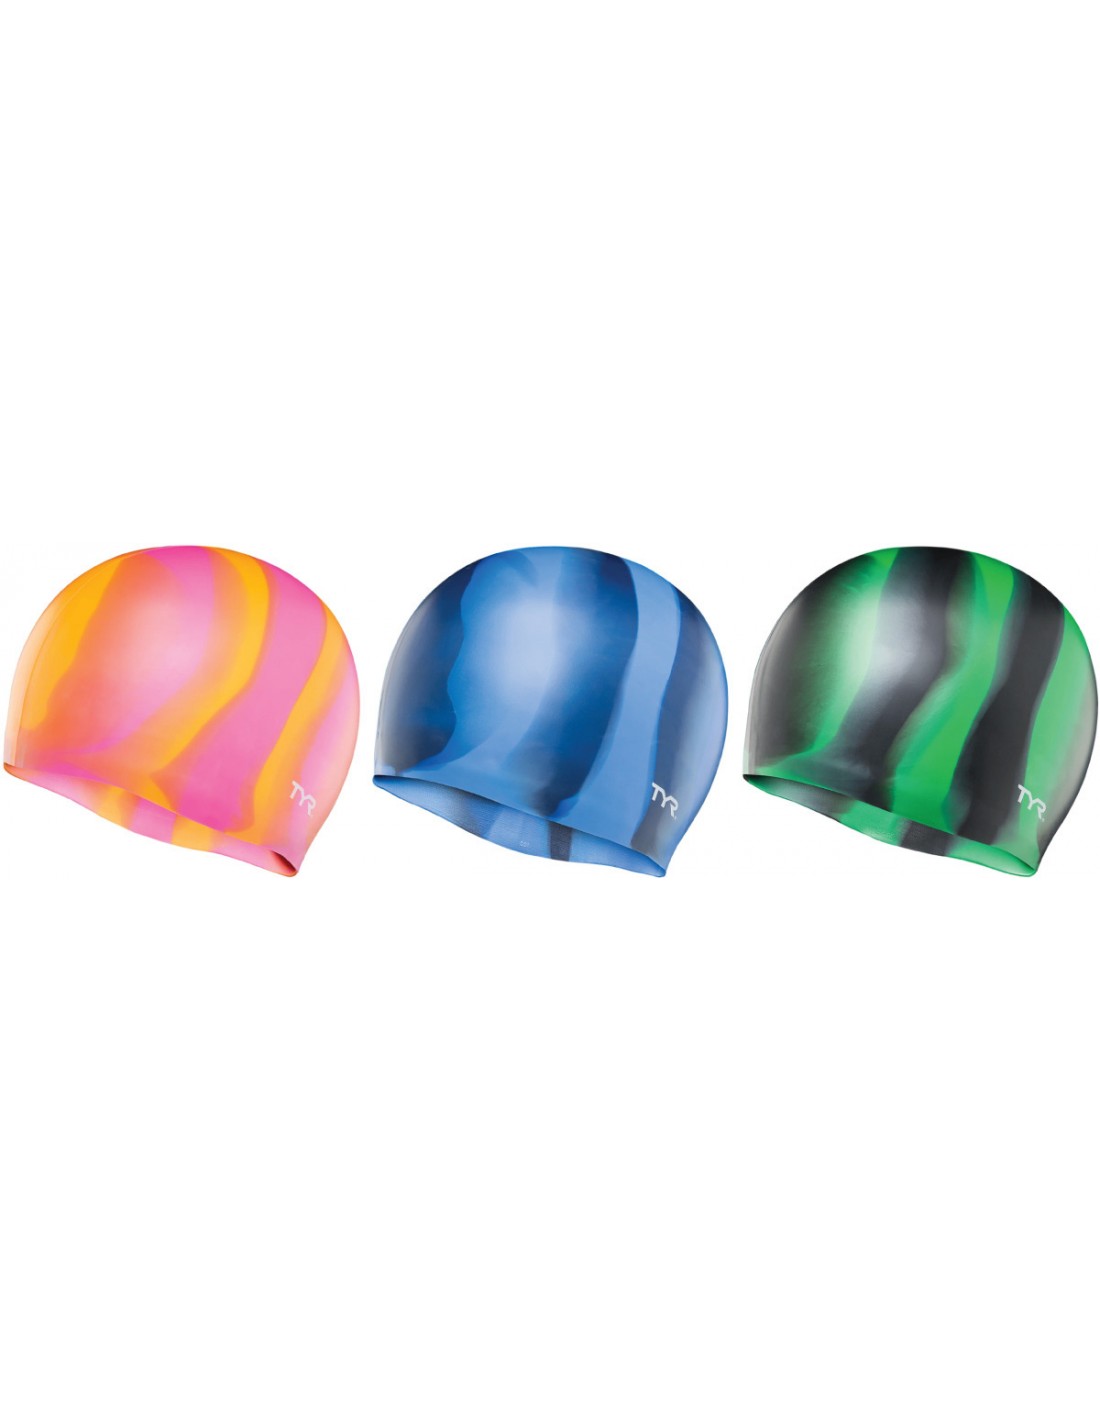 Cuffia in Silicone Multi-Color Cap Tyr